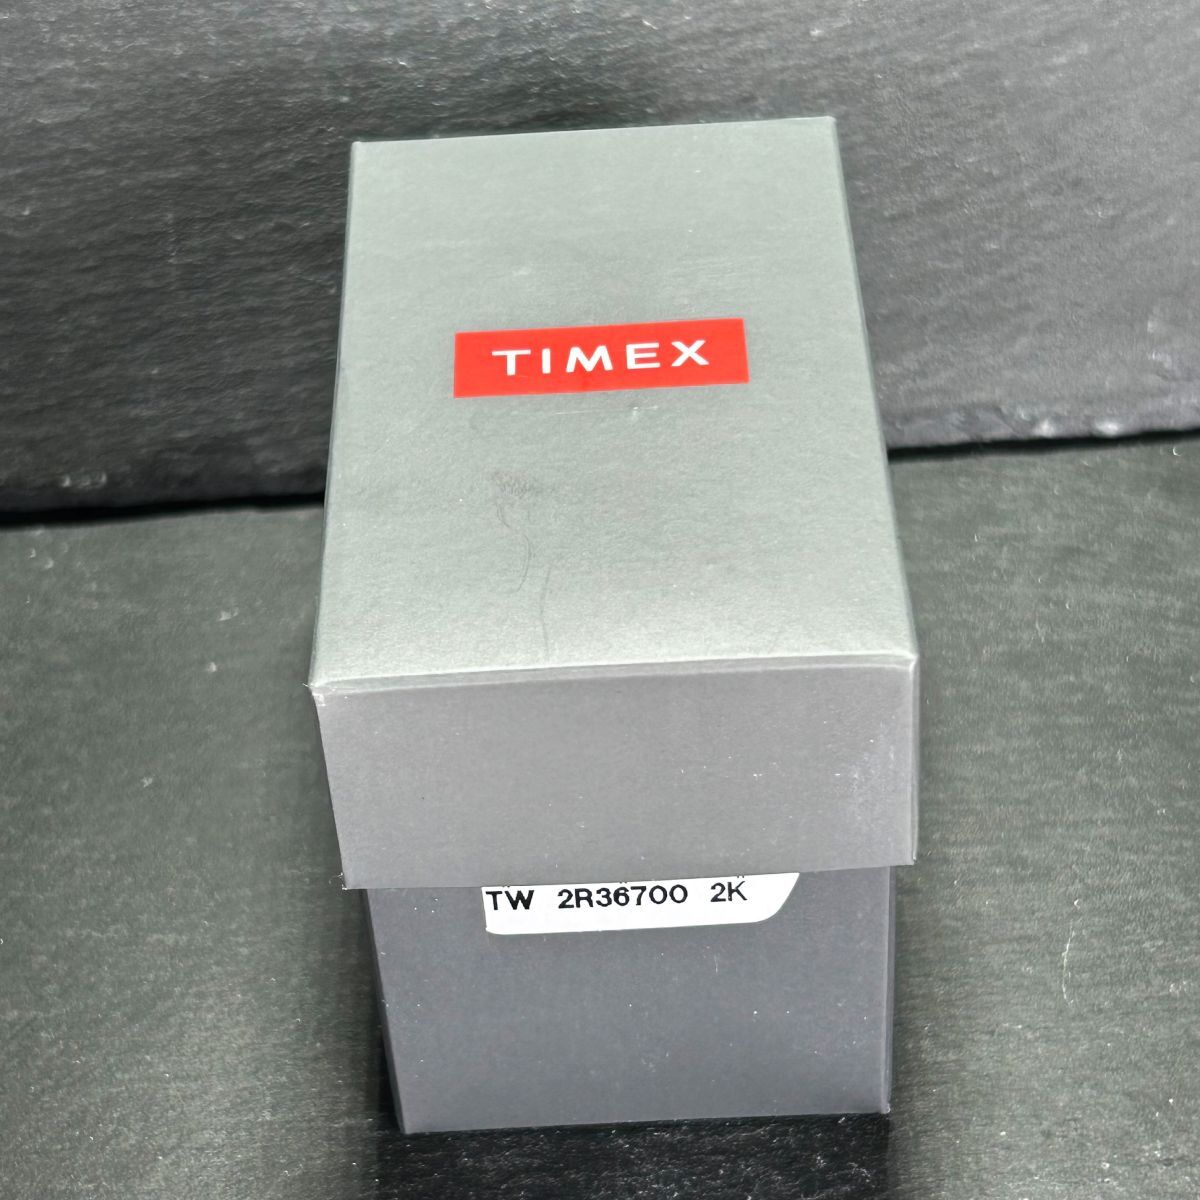  прекрасный товар Timex Timex TW 2R36700 наручные часы кварц аналог календарь черный циферблат чёрный нержавеющая сталь мужской рабочее состояние подтверждено 